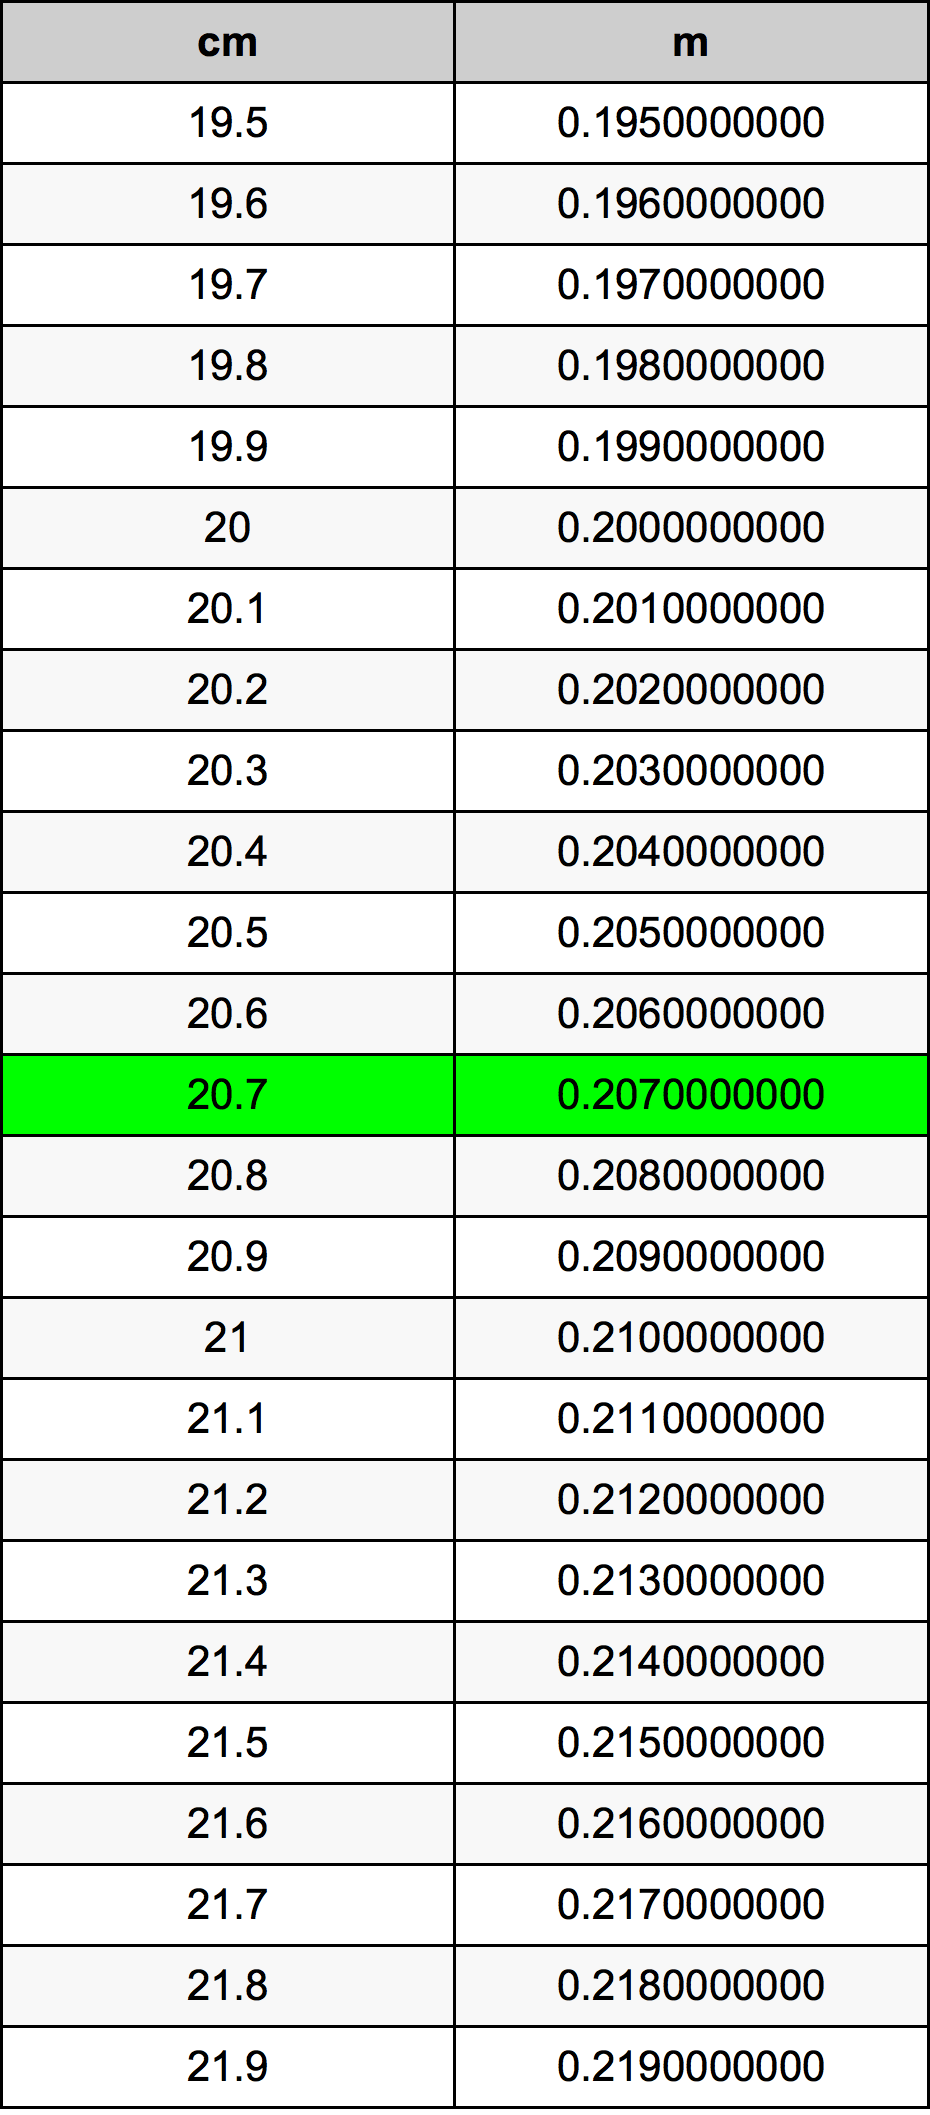 20.7 Centiméter átszámítási táblázat